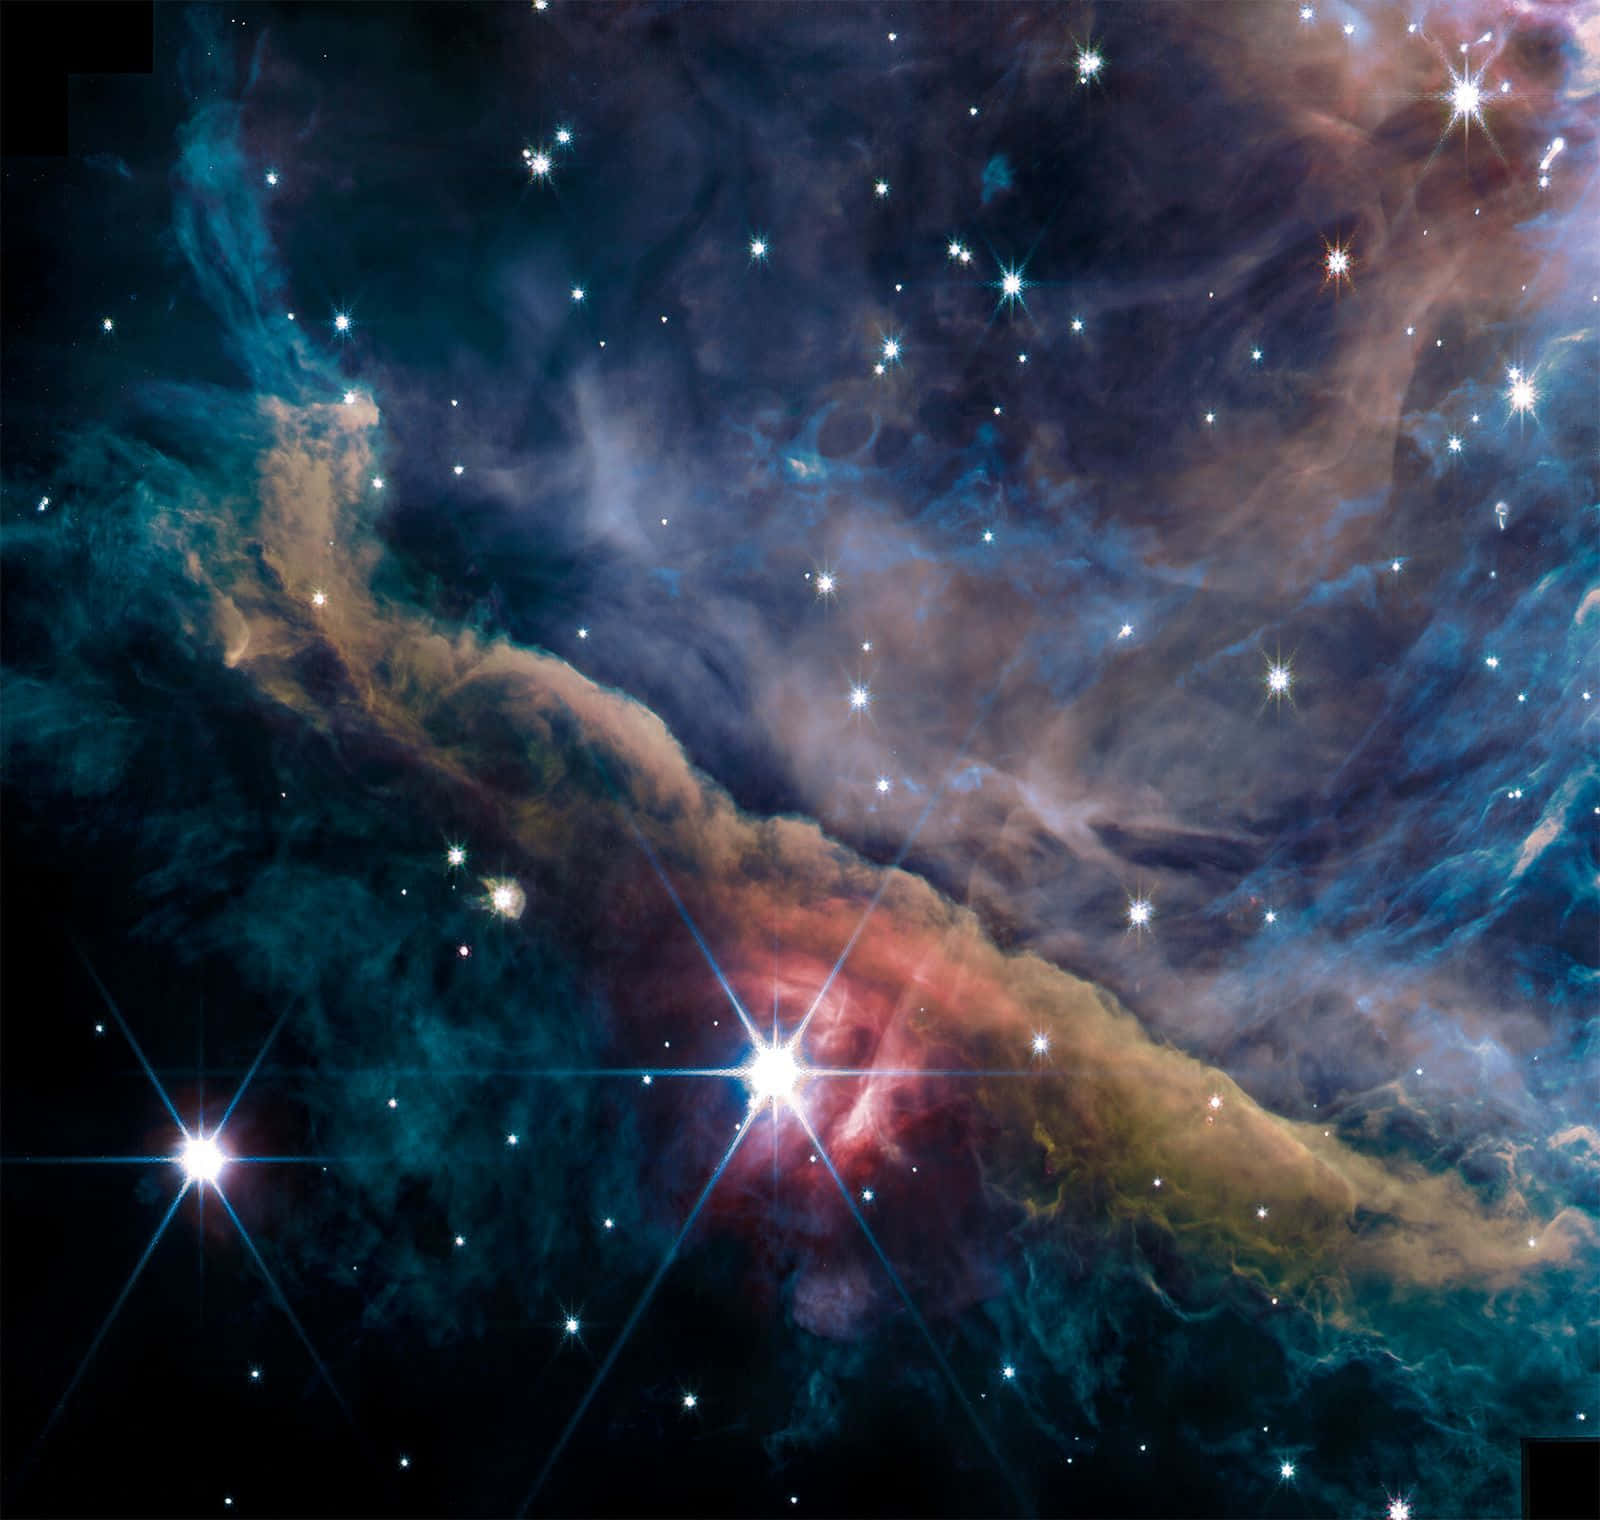 Imagende Estrellas En El Espacio Y La Nebulosa De Orión.